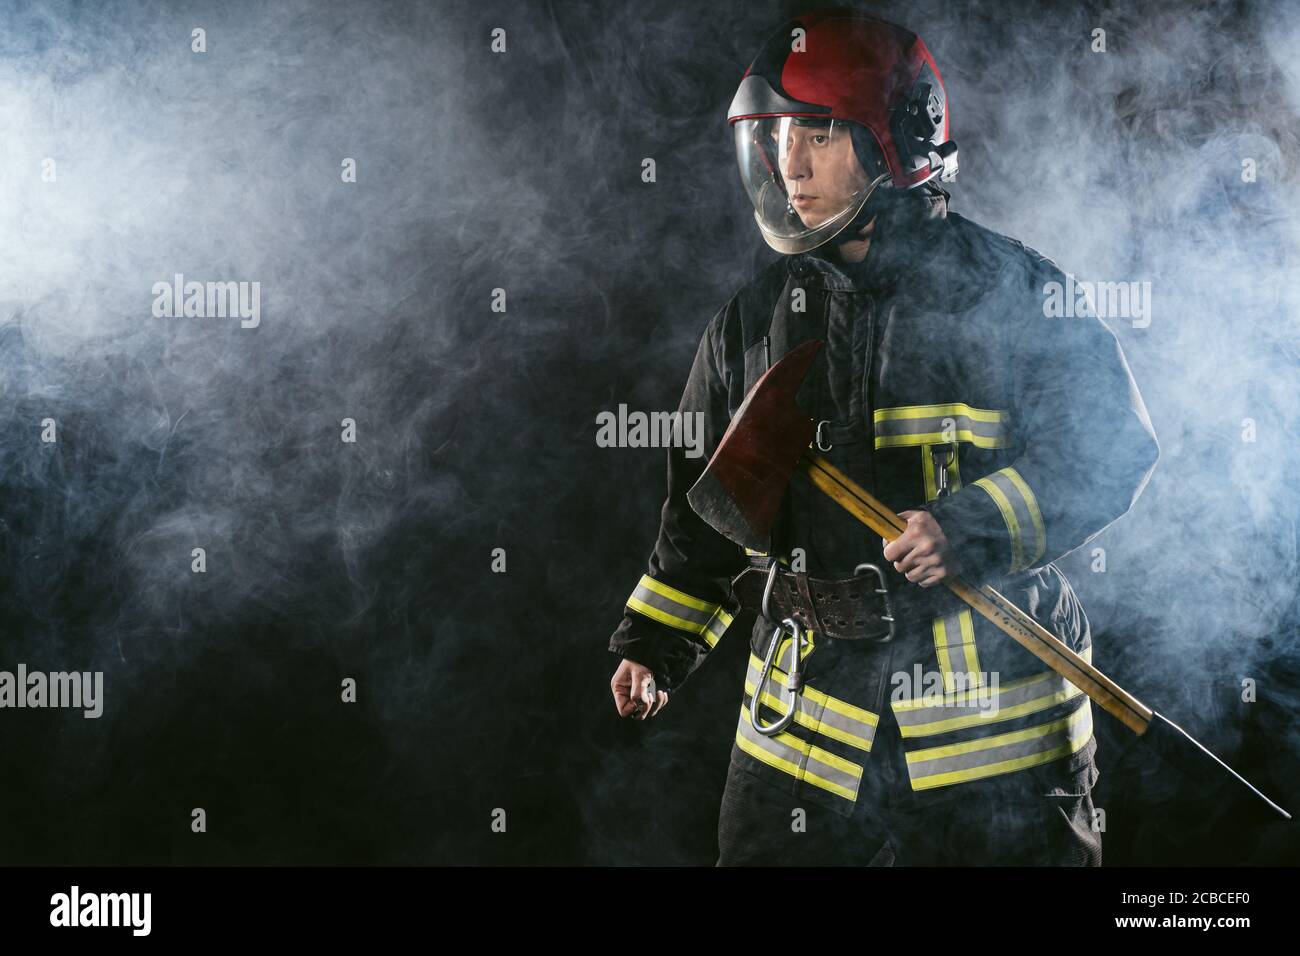 un bombero seguro y resistente que ahorra y protege del fuego, que lleva casco y traje de protección, que trabaja en la estación de bomberos Foto de stock